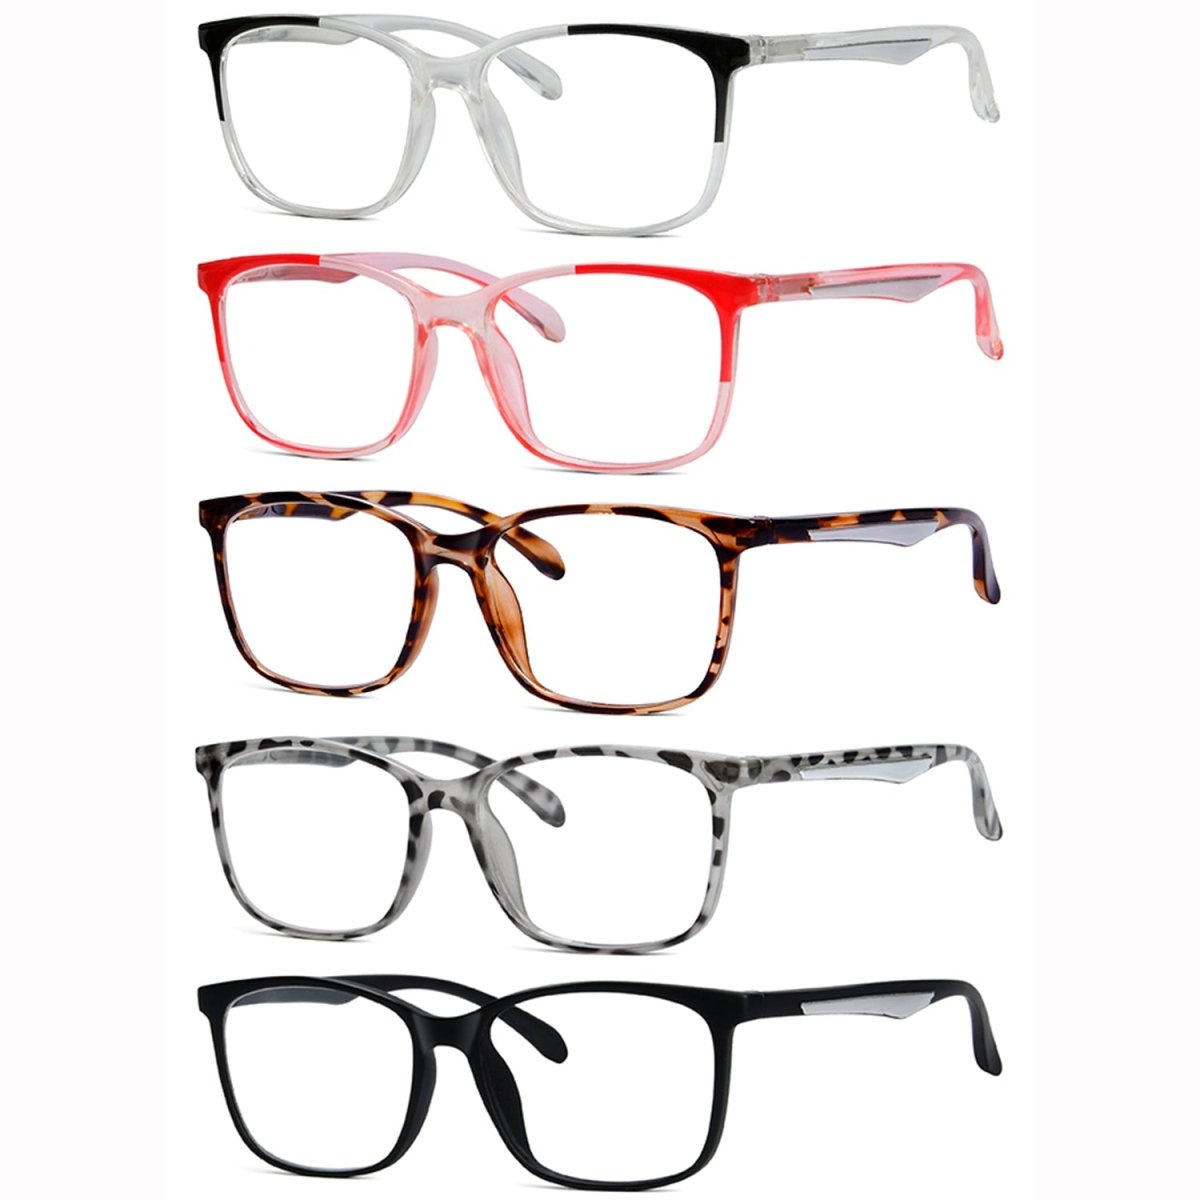 5 Pack Classic Rectangle Reading Glasses for Women Men R9113eyekeeper.com